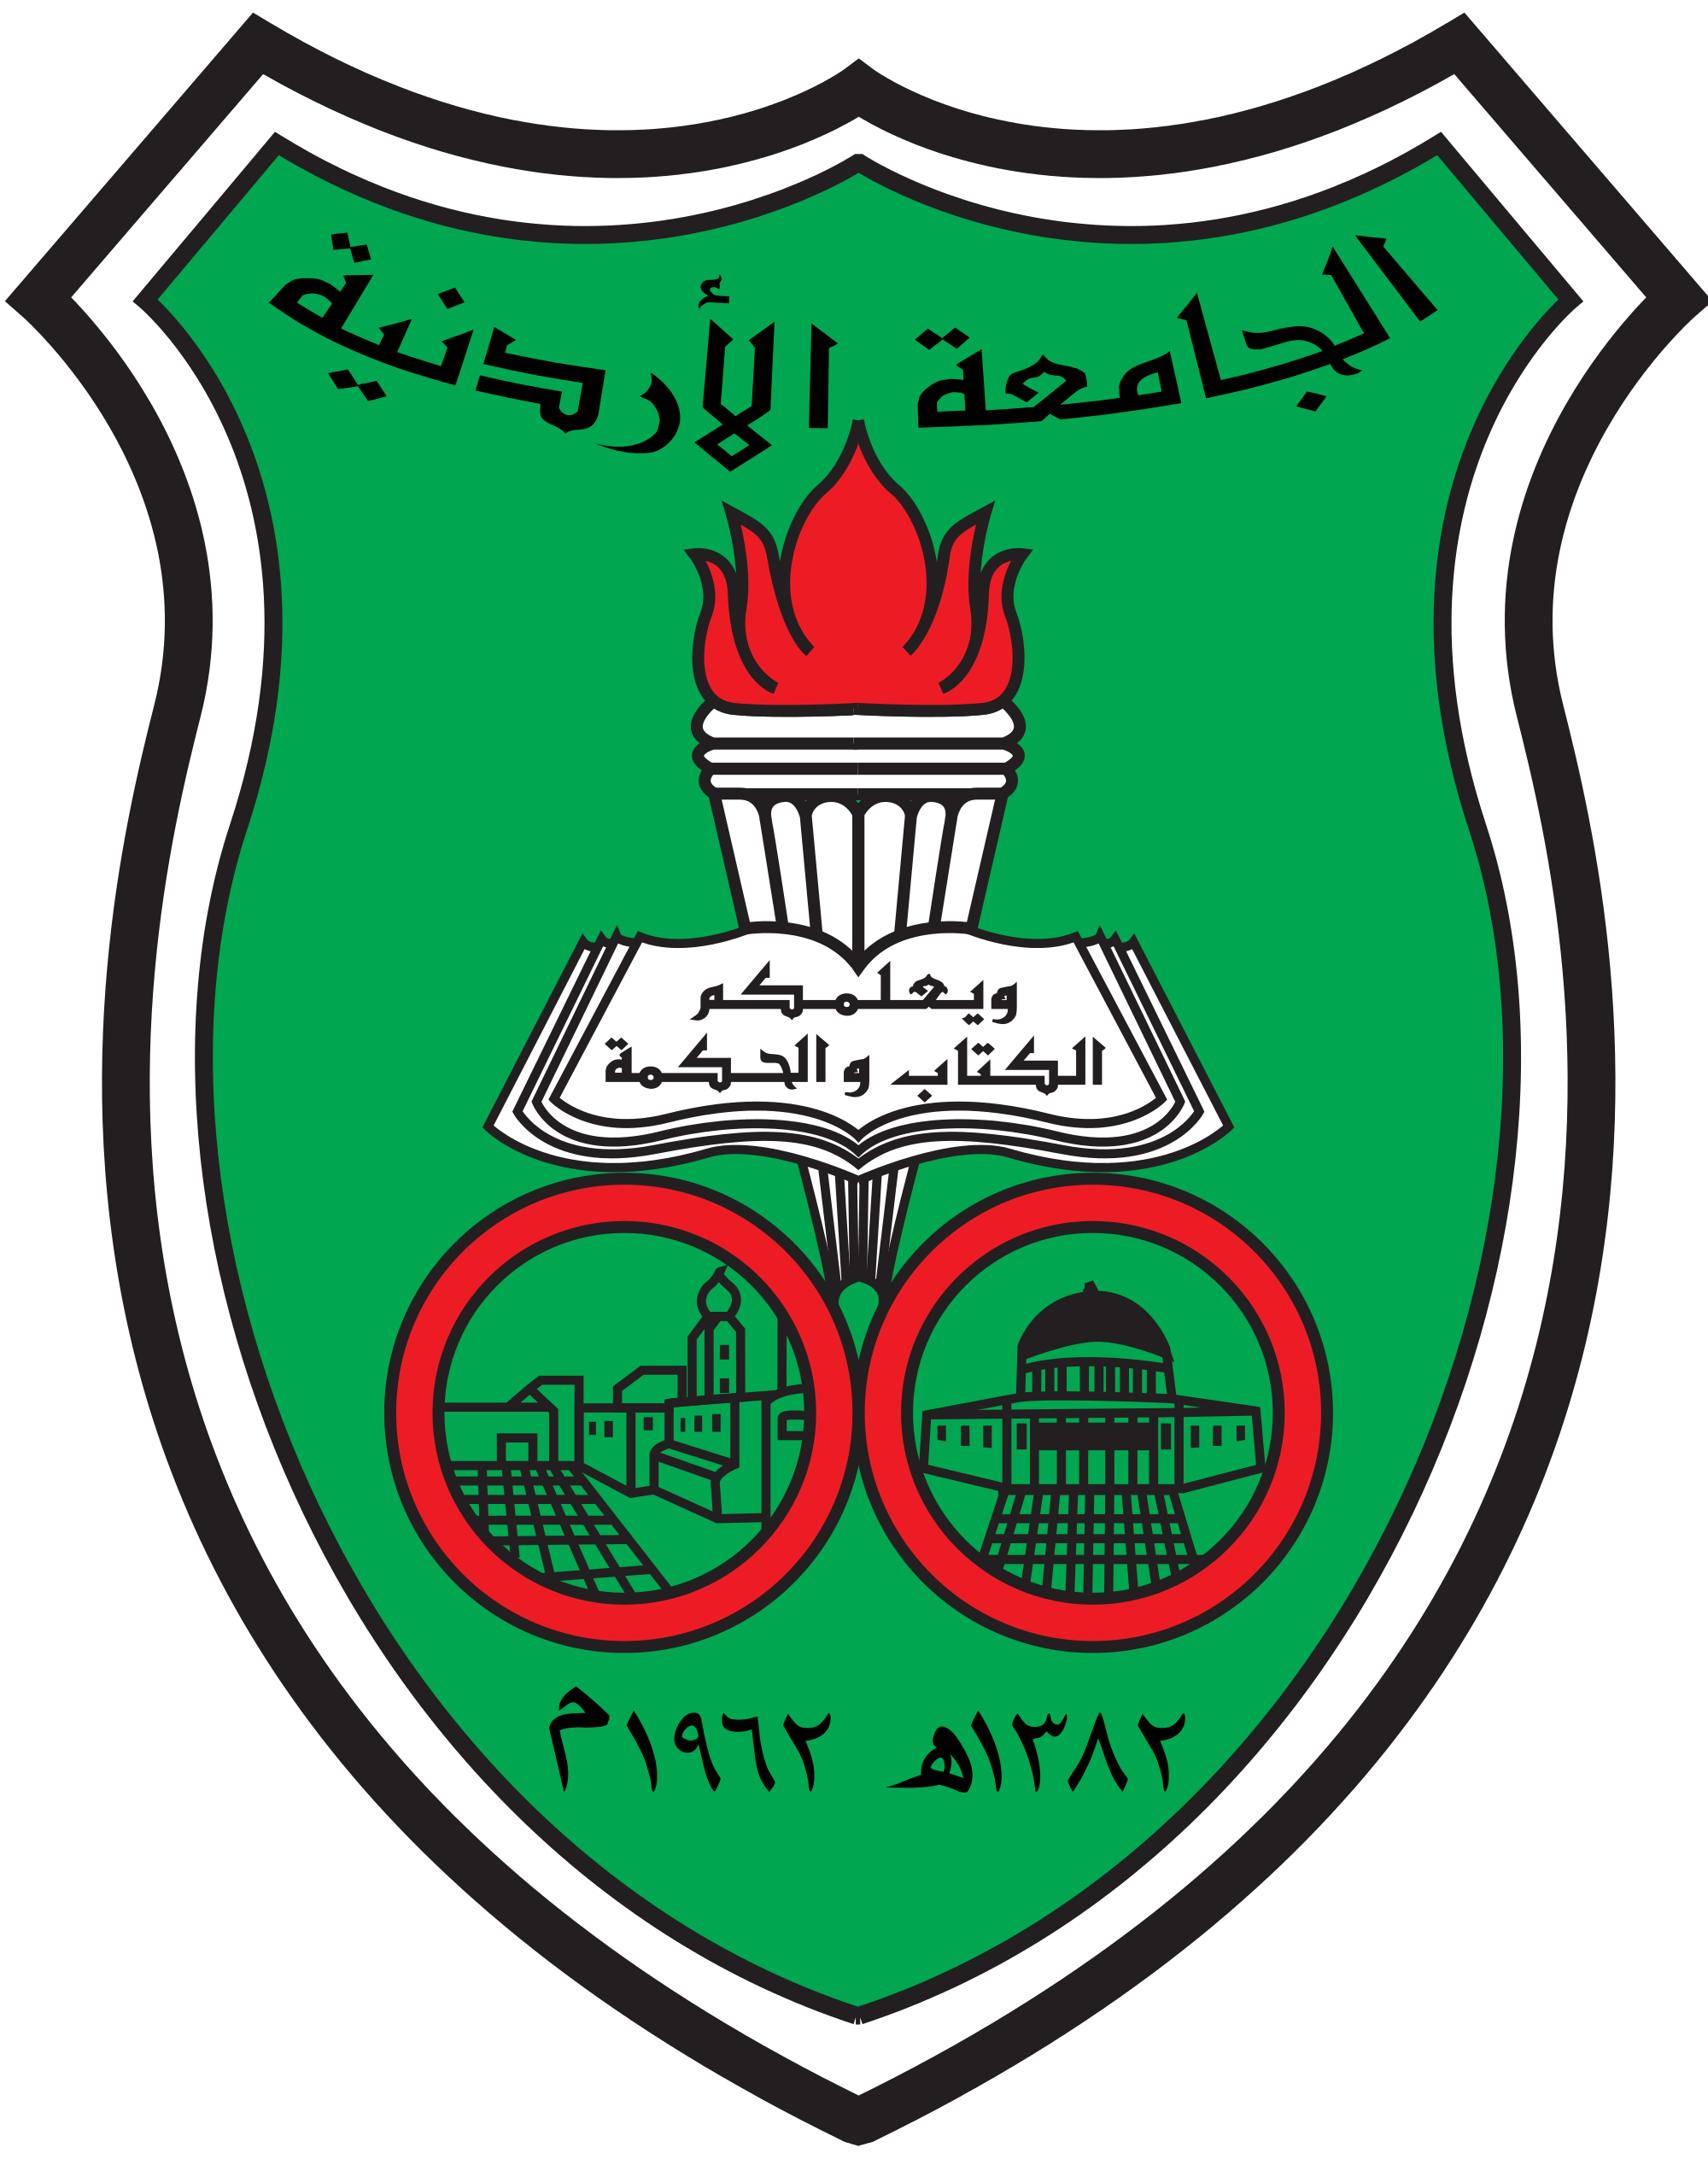 UJ Logo